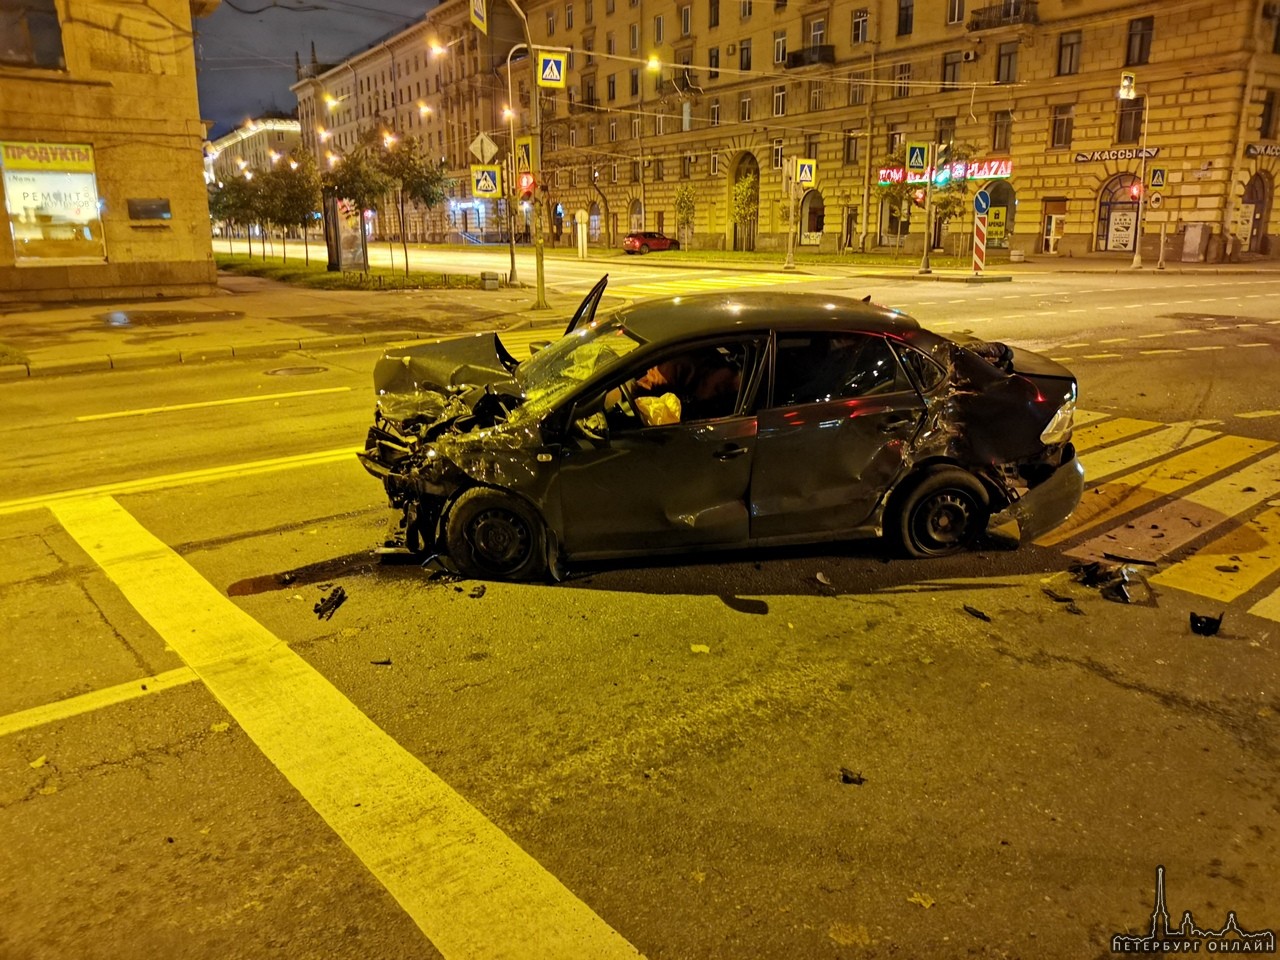 Серьёзное ДТП произошло на пересечении проспекта Стачек и улицы Зенитчиков около 3:20 ночи 20 октябр...